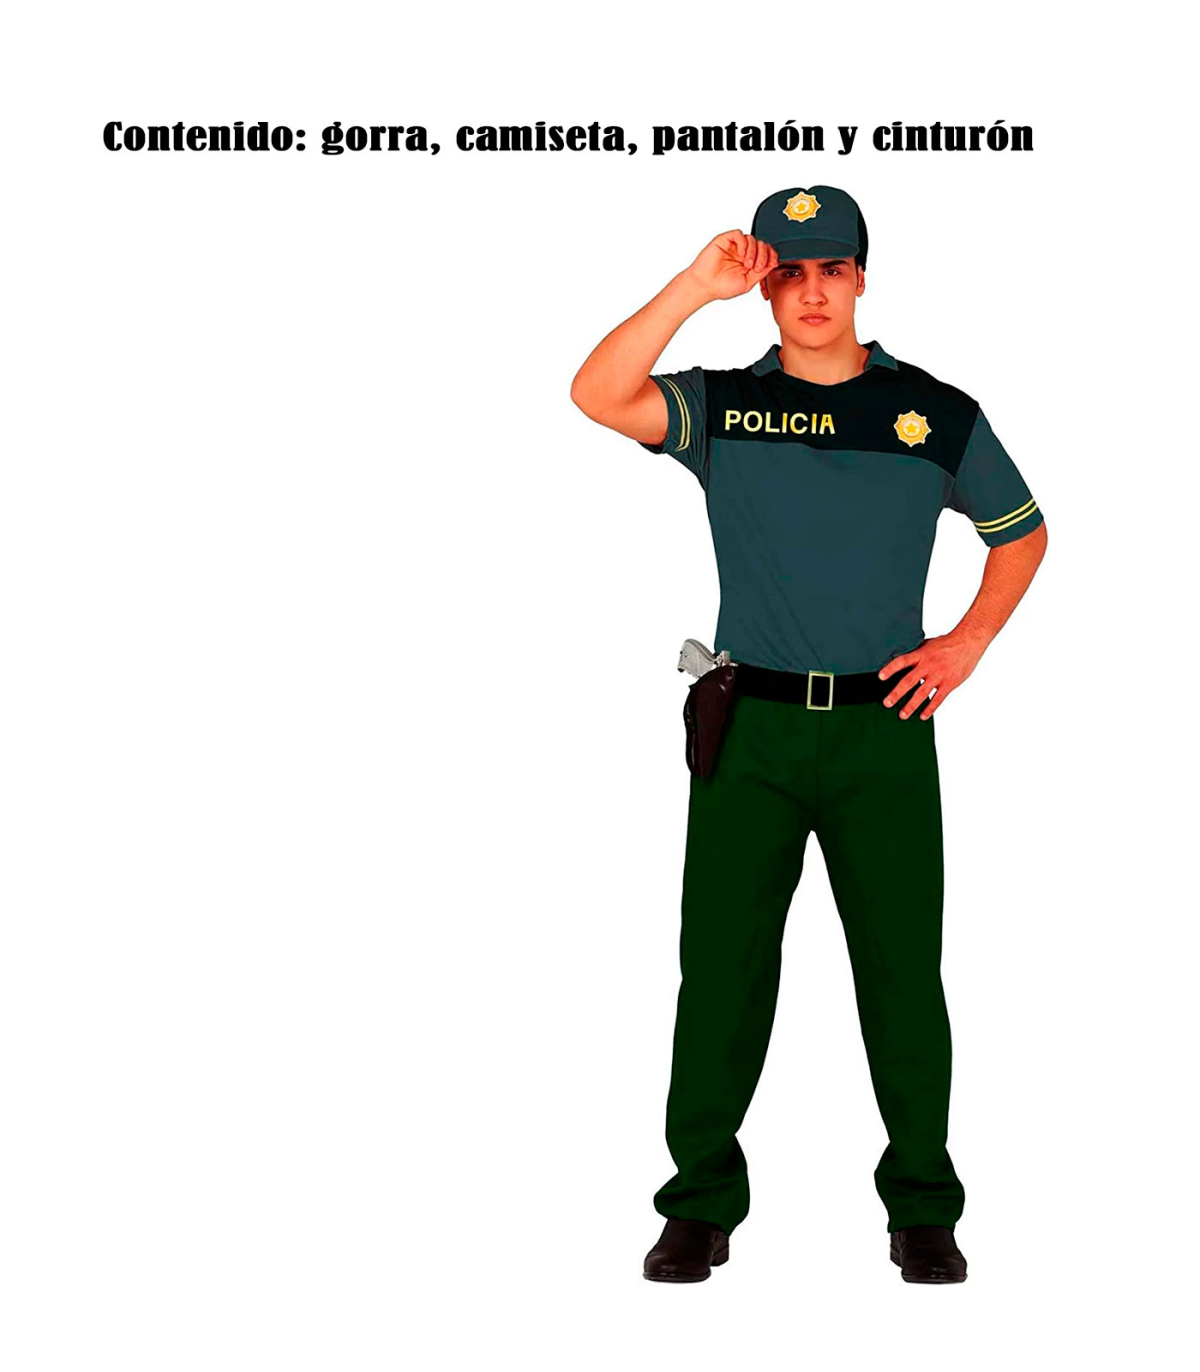 Disfraz de policía para hombre, manga corta, poliéster 100%, incluye gorra,  camiseta, pantalón y cinturón, atuendo d